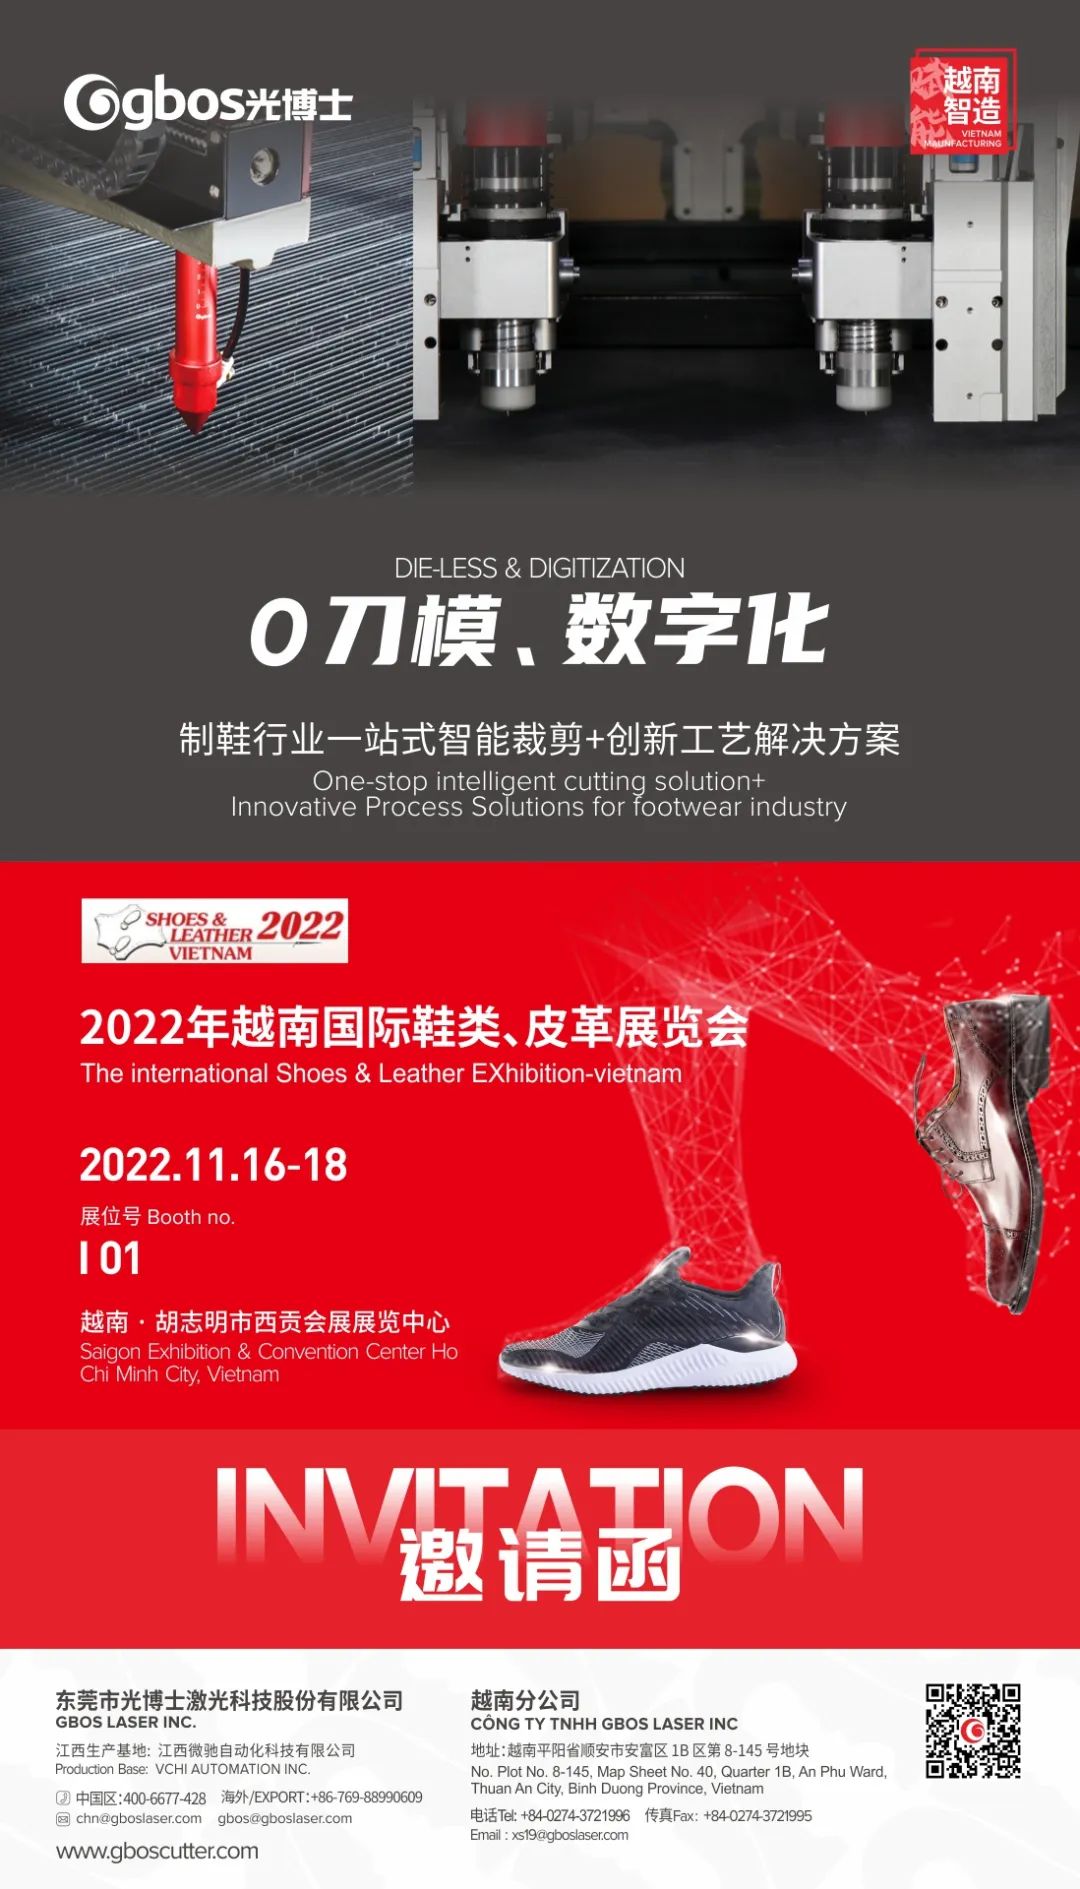 2022年越南国际鞋类、皮革展览会邀请函